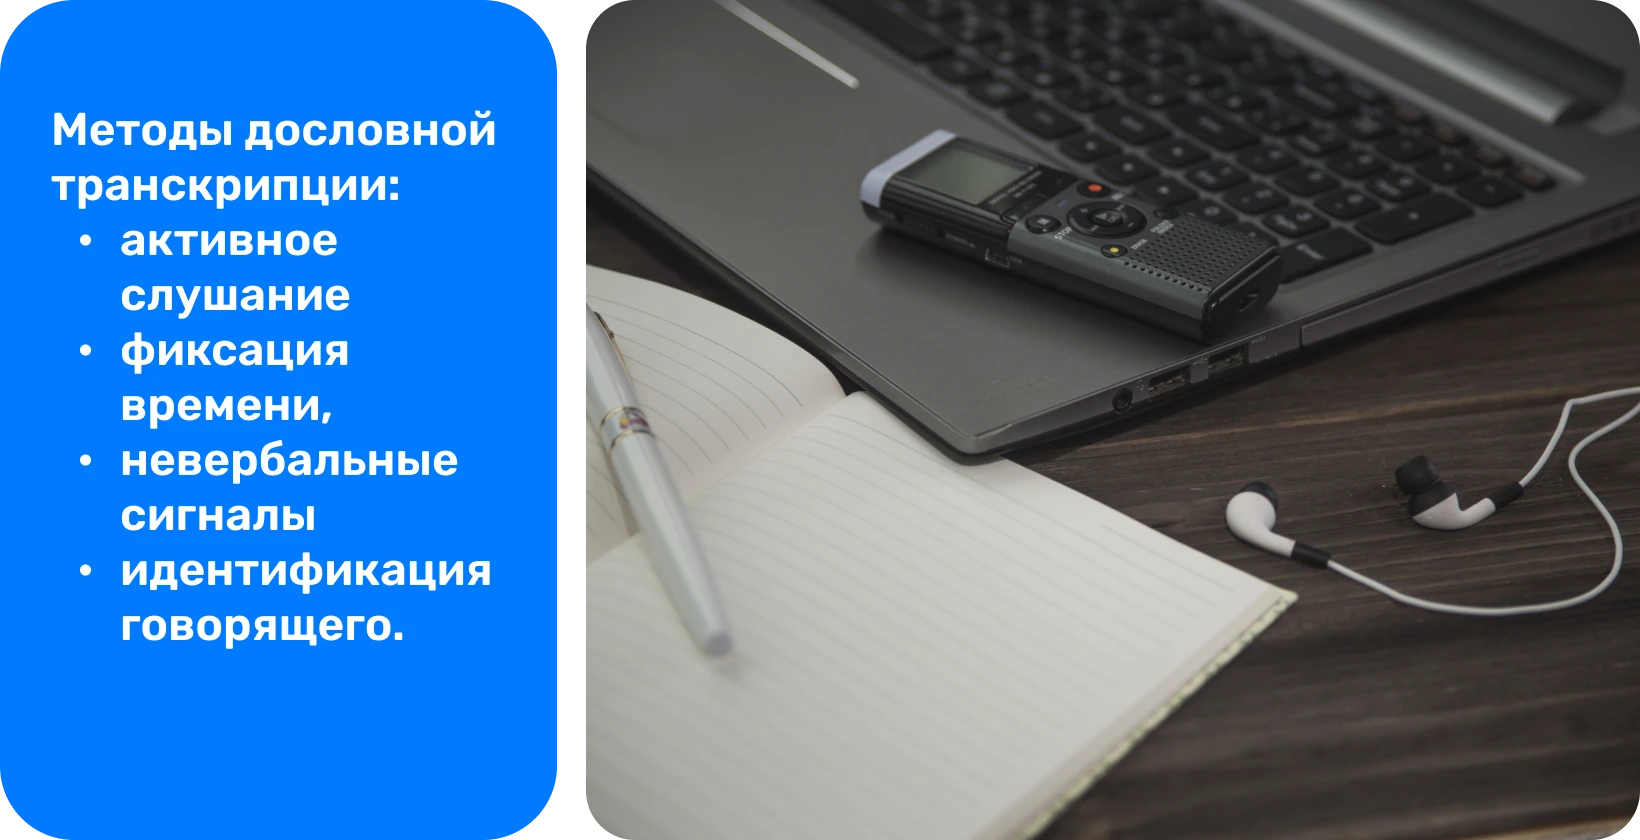 Цифровой диктофон, наушники и блокнот на столе рядом с ноутбуком — необходимые инструменты для освоения verbatim техник транскрипции.